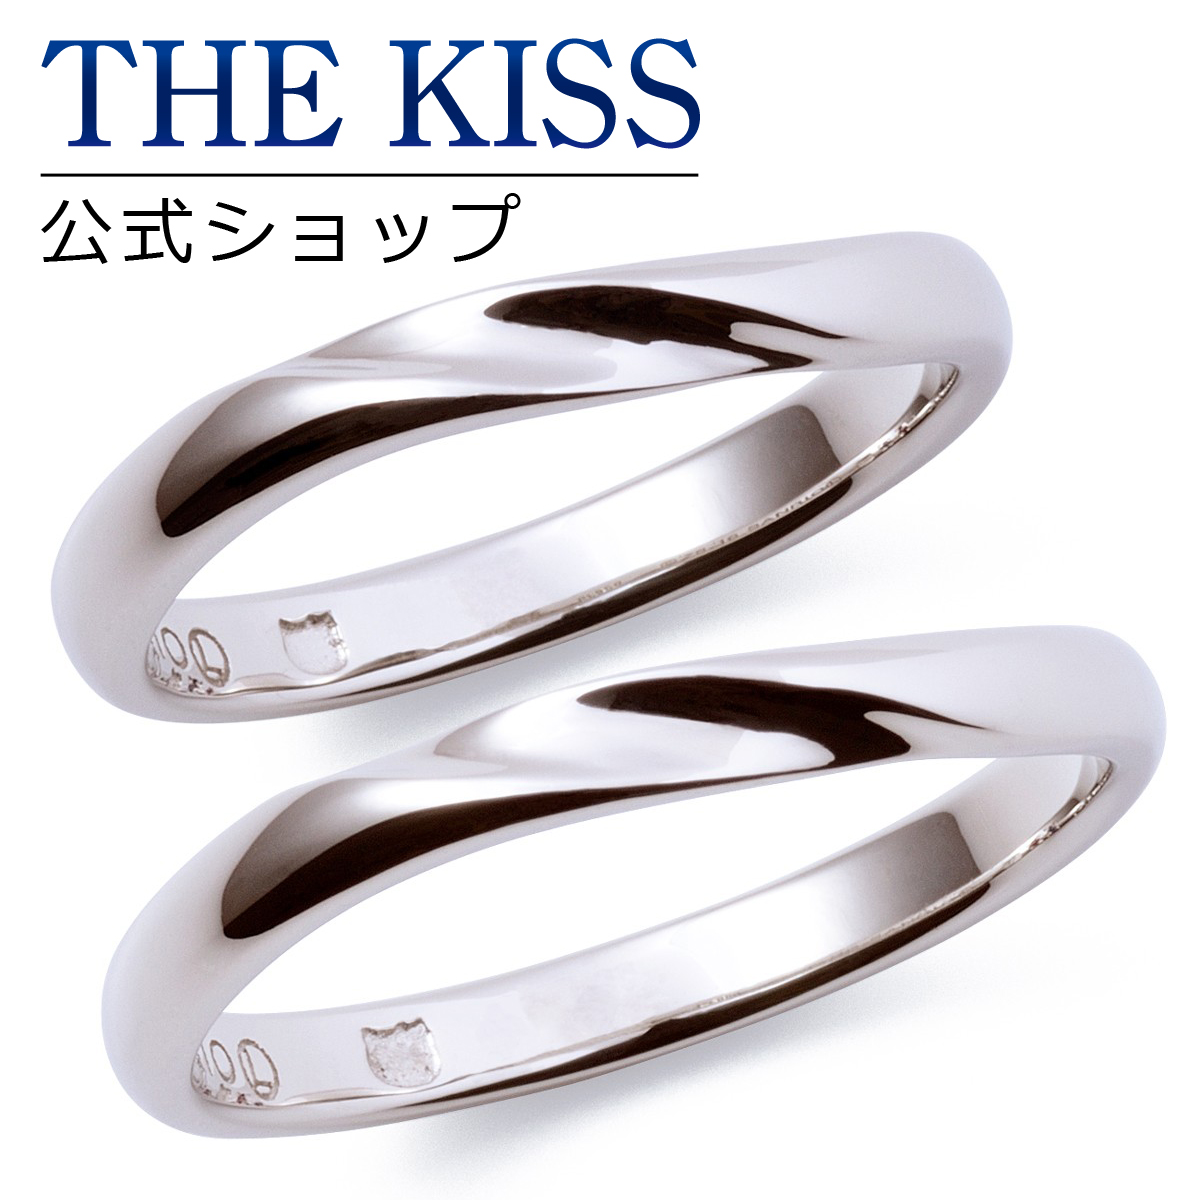 結婚指輪 マリッジリング 2本セット ダイヤ ダイヤモンド プラチナリング ペアリング 人気 大きいサイズ対応 指輪 送料無料 激安人気新品